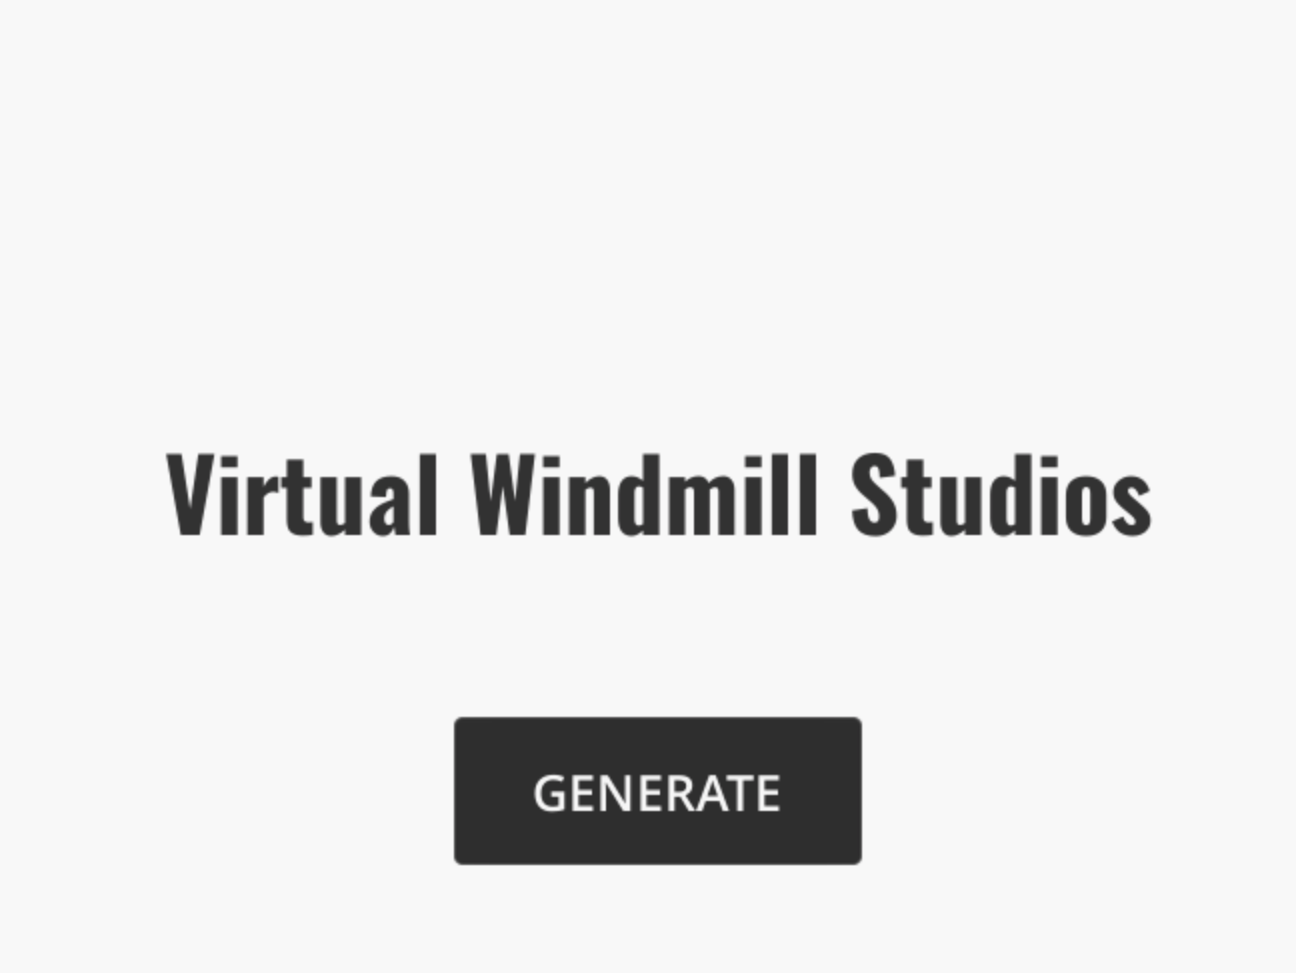 Generated VR Game Studio Name